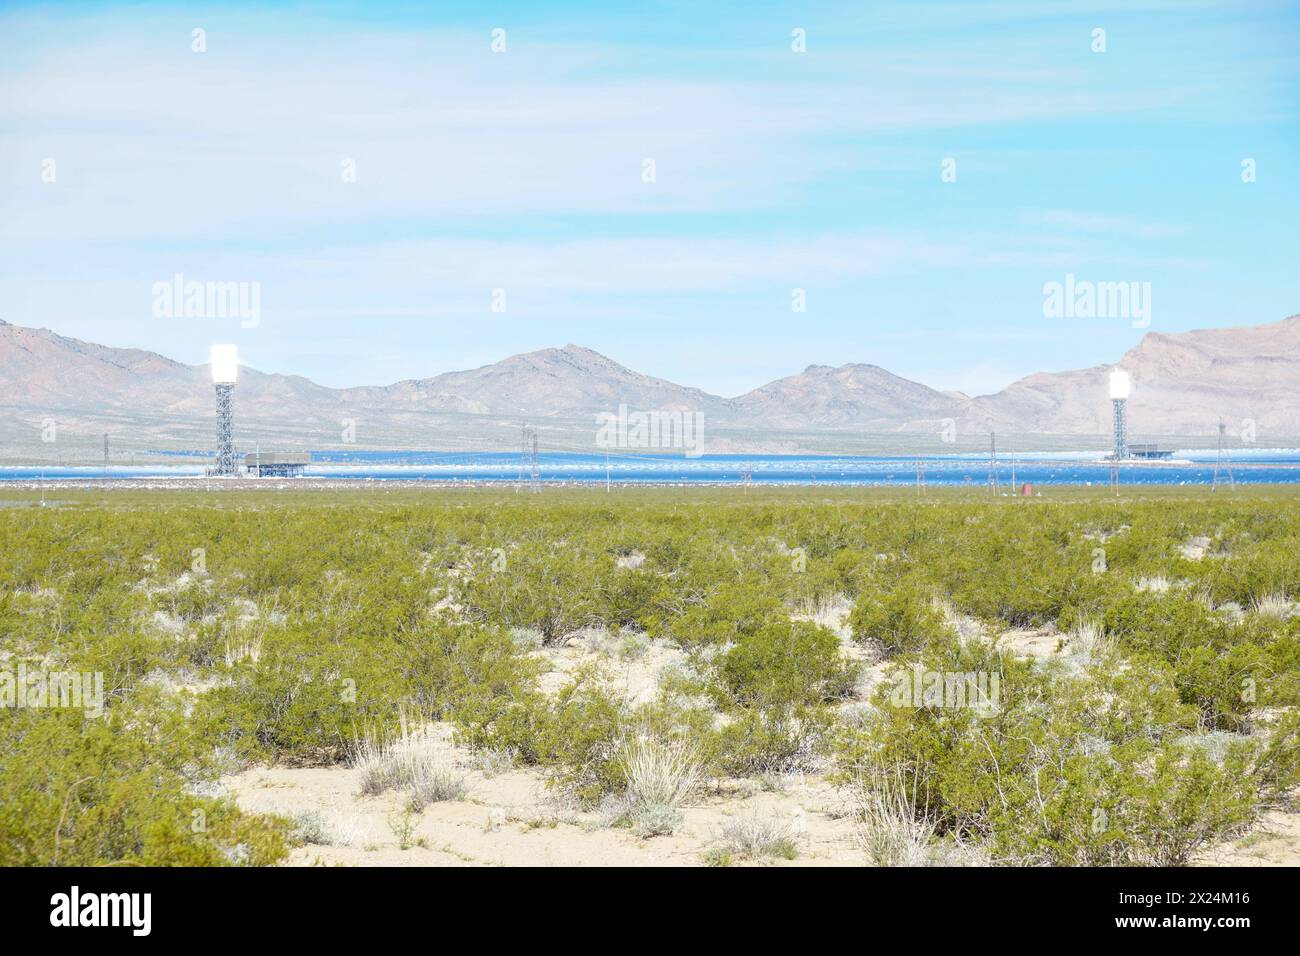 Das Ivanpah Solar Electric Generating System. Eine konzentrierte Solarthermie mitten in der Mojave-Wüste. Stockfoto